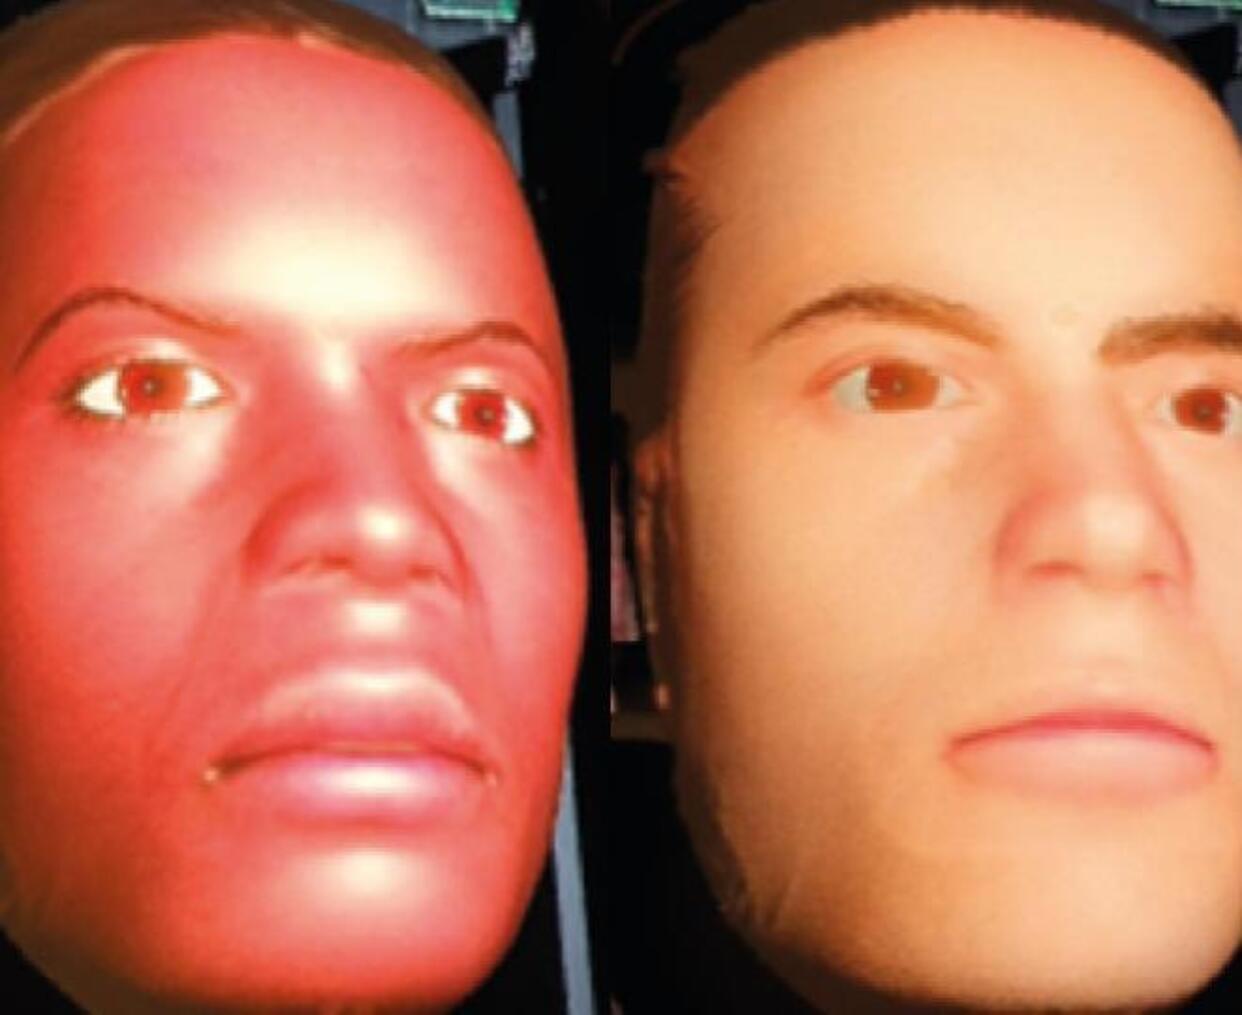 Diseñan un robot con expresiones faciales de dolor realistas para entrenar a médicos